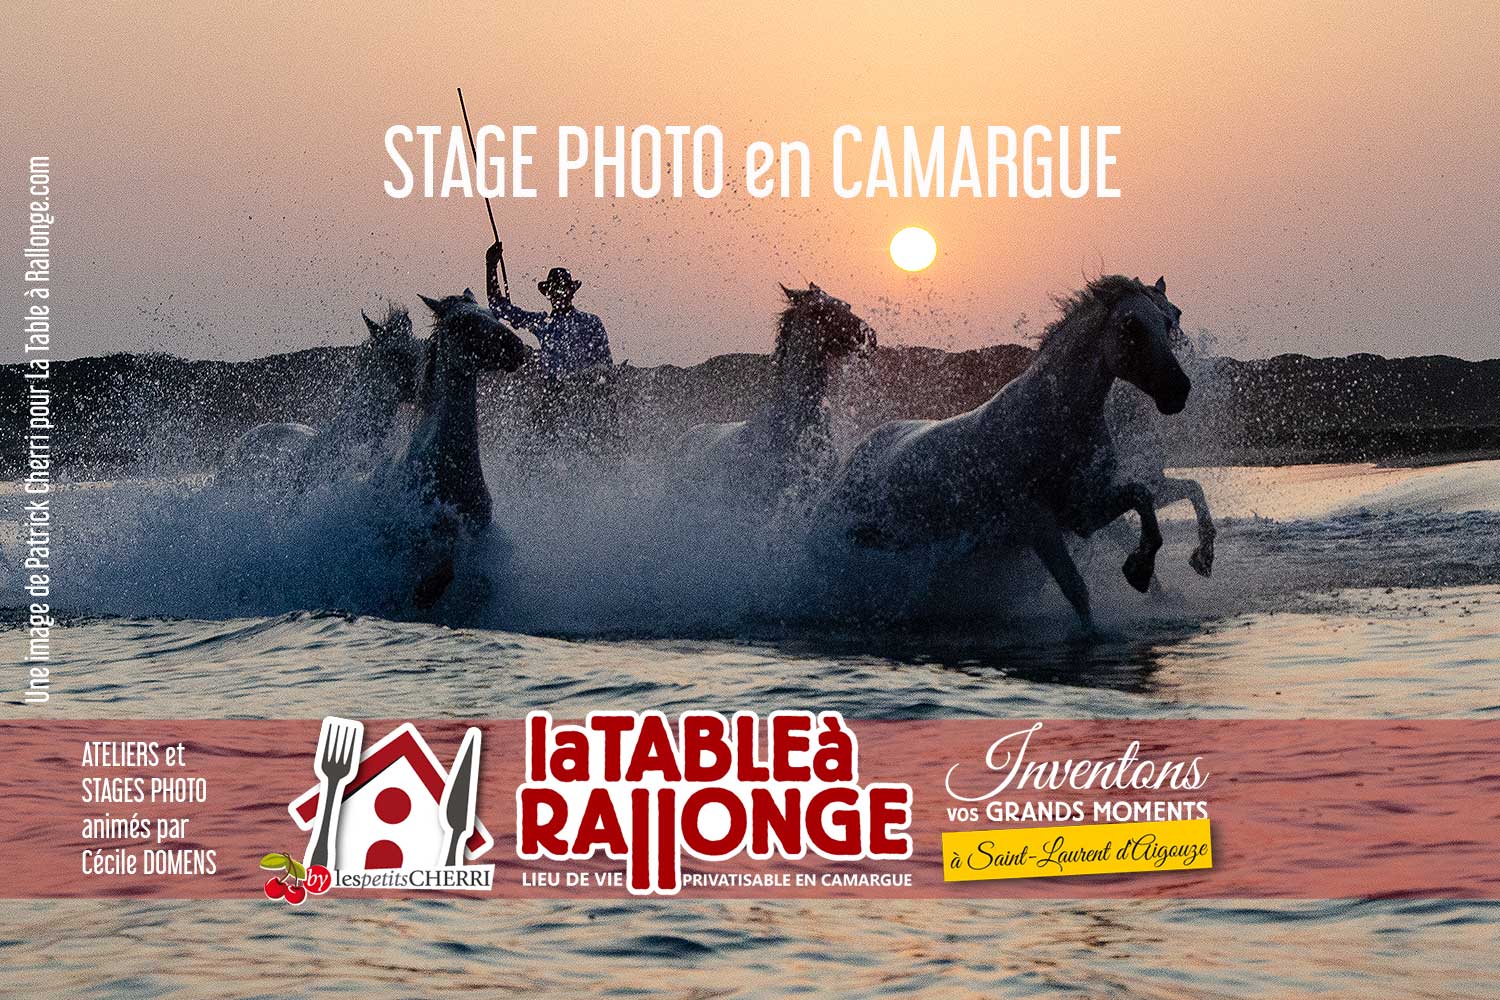 Stages et ateliers de photos en Camargue, hébergements spécialisés pour photographes en Camargue